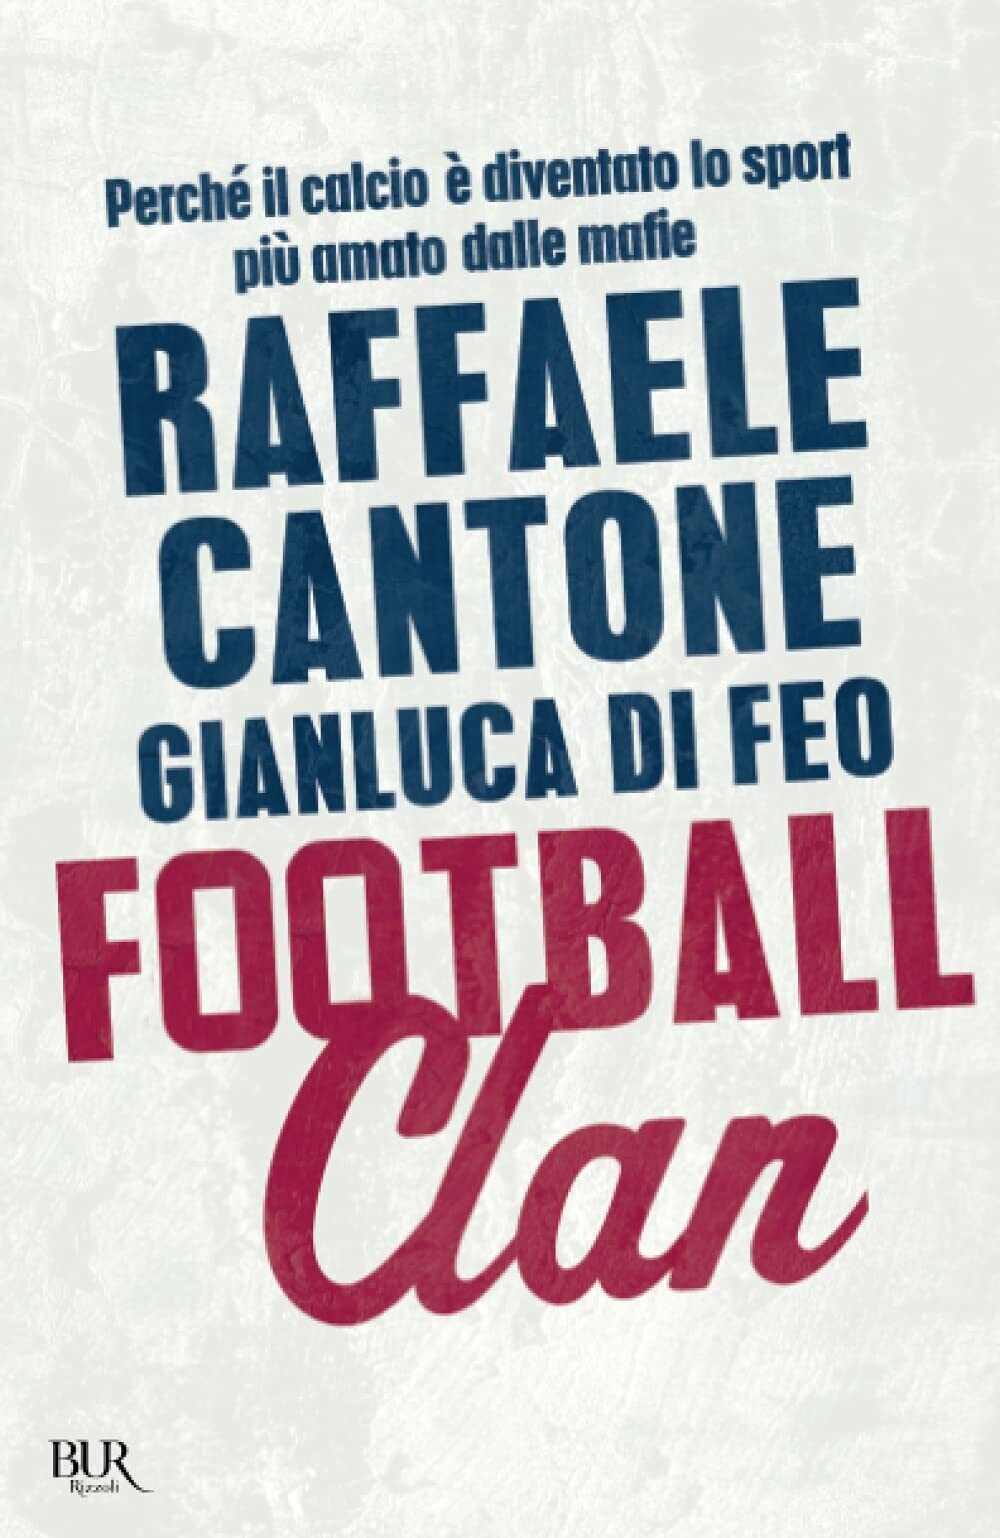 Football clan - Raffaele Cantone, Gianluca Di Feo - Rizzoli, 2014